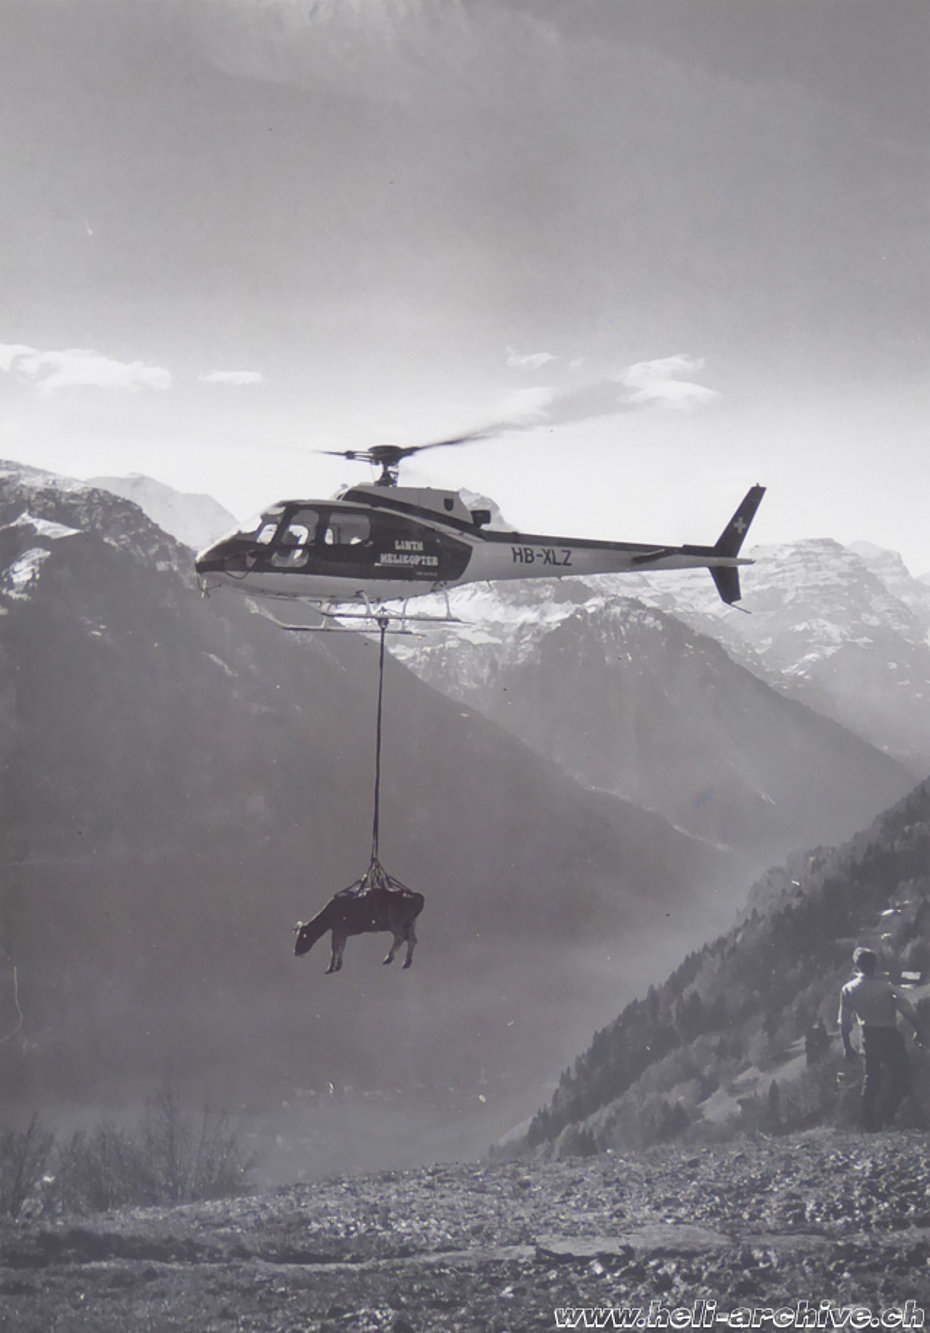 Alpi glaronesi, anni Ottanta - L'AS 350B Ecureuil HB-XLZ della Linth Helikopter impegnato nel trasporto di una bovina (famiglia Kolesnik)